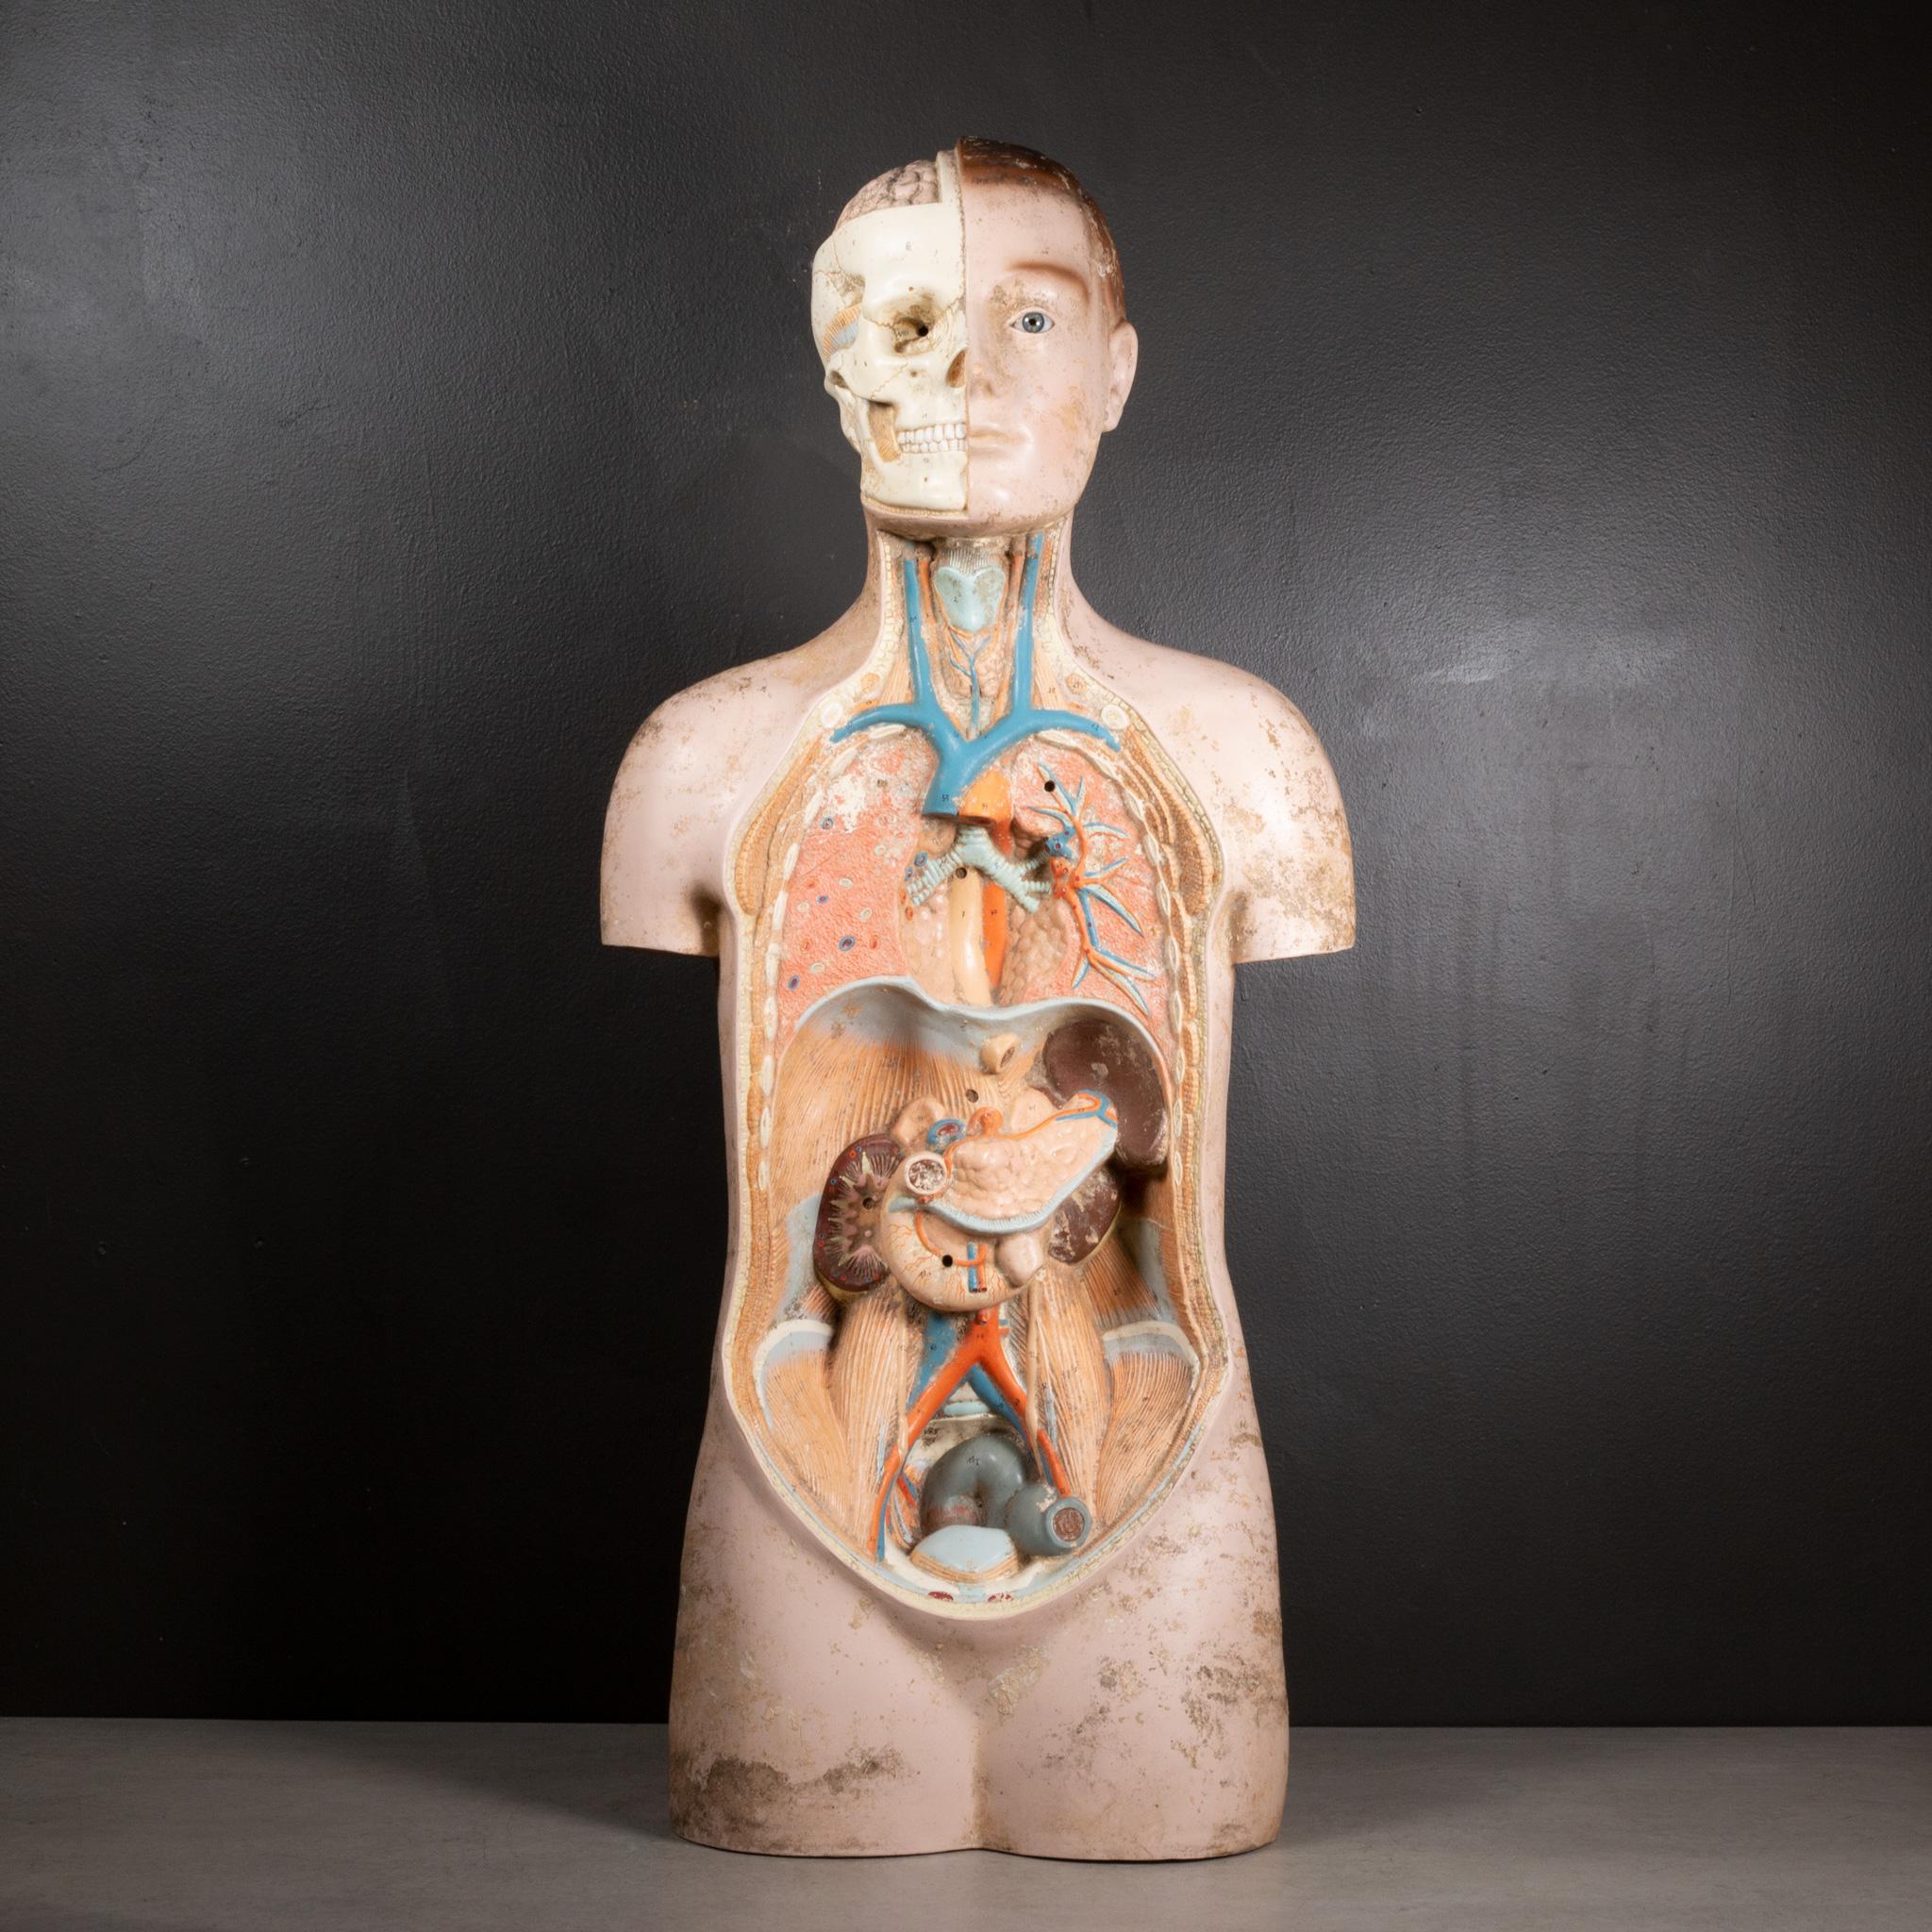 À PROPOS DE

Dispositif d'enseignement médical anatomique du corps humain datant du milieu du siècle dernier. Les organes et les muscles sont numérotés et le crâne porte des chiffres romains. Un œil de verre. La pièce a conservé sa finition